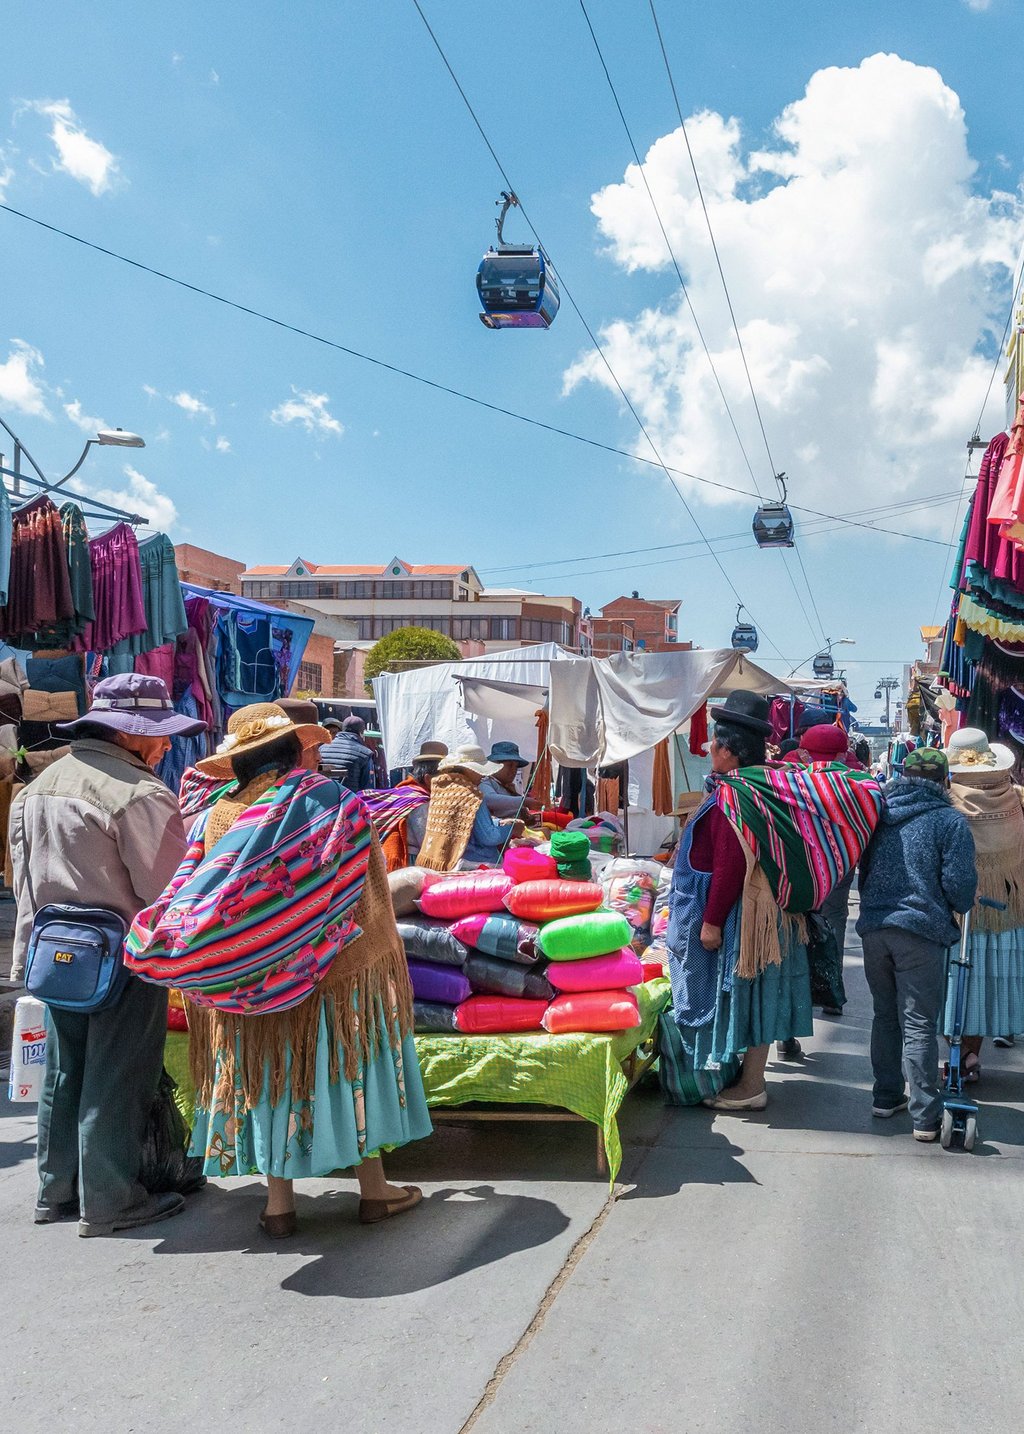 Foto eines Marktes in La Paz, Bolivien. In der Mitte befindet sich ein Stand mit bunten Stoffen, am dem Menschen stehen. An den Rändern sind Stände mit hängenden Bekleidungsstücken zu sehen. Oberhalb der Marktsituation verläuft die Seilbahn.